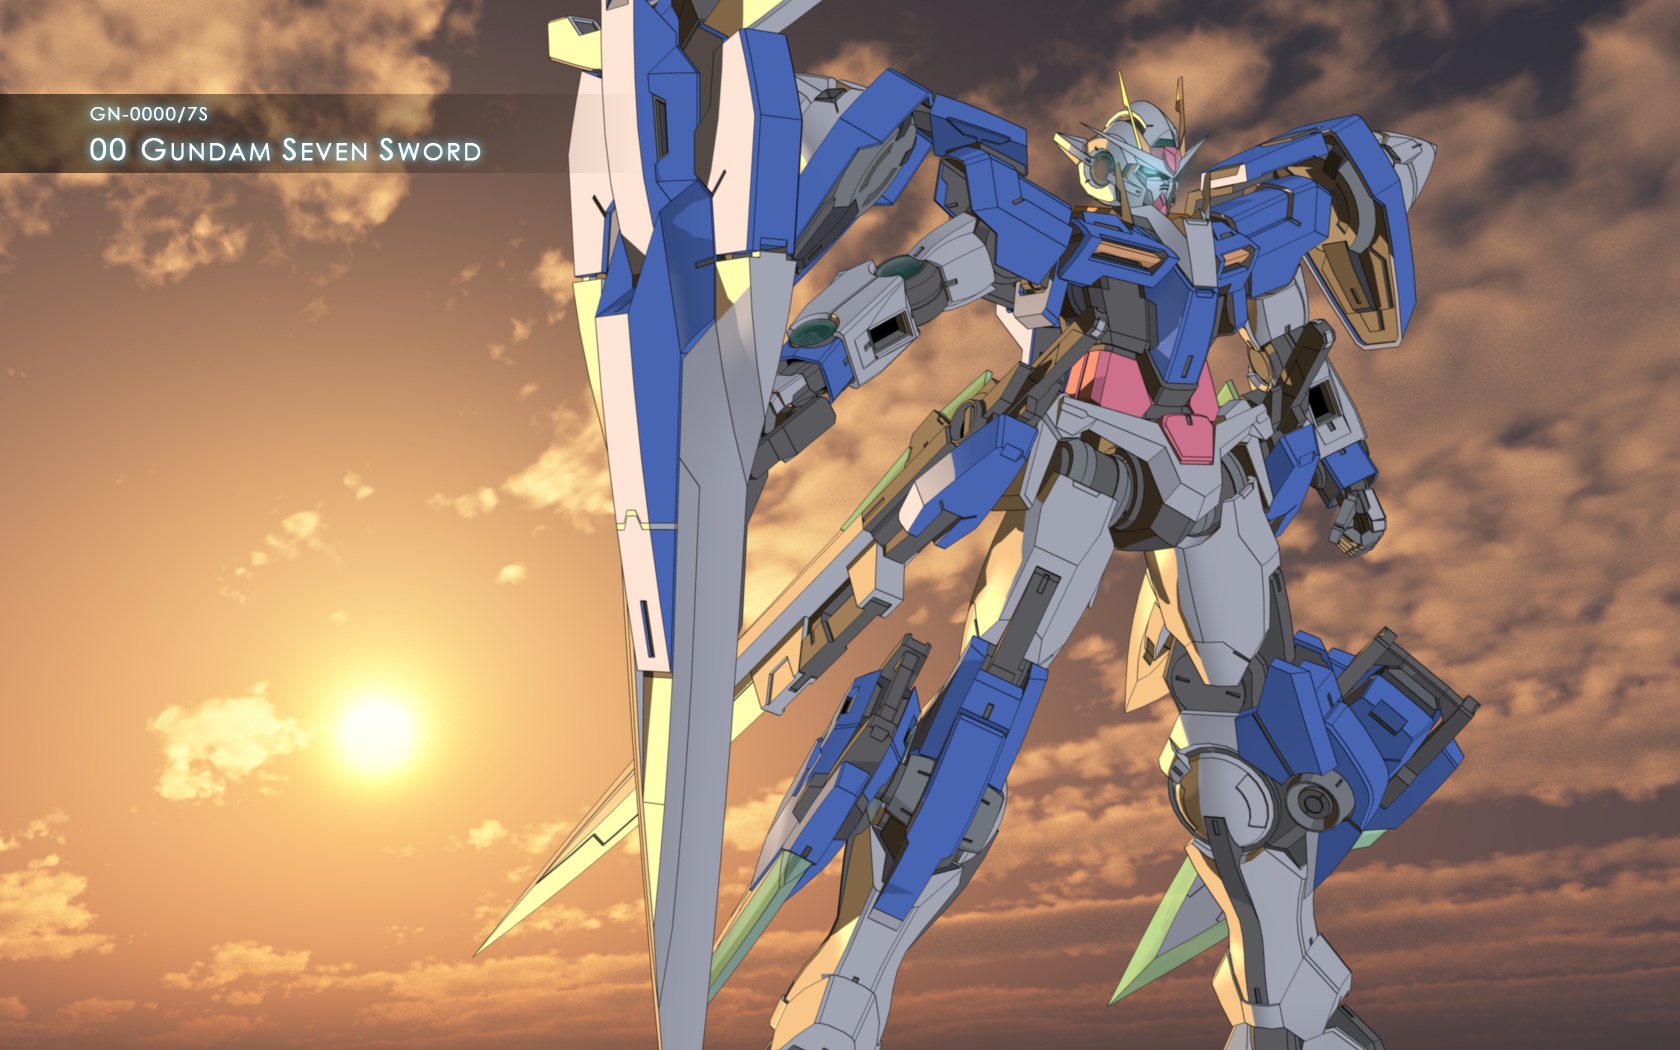 Image CG 00 7 Sword Wallpaperjpg The Gundam Wiki FANDOM